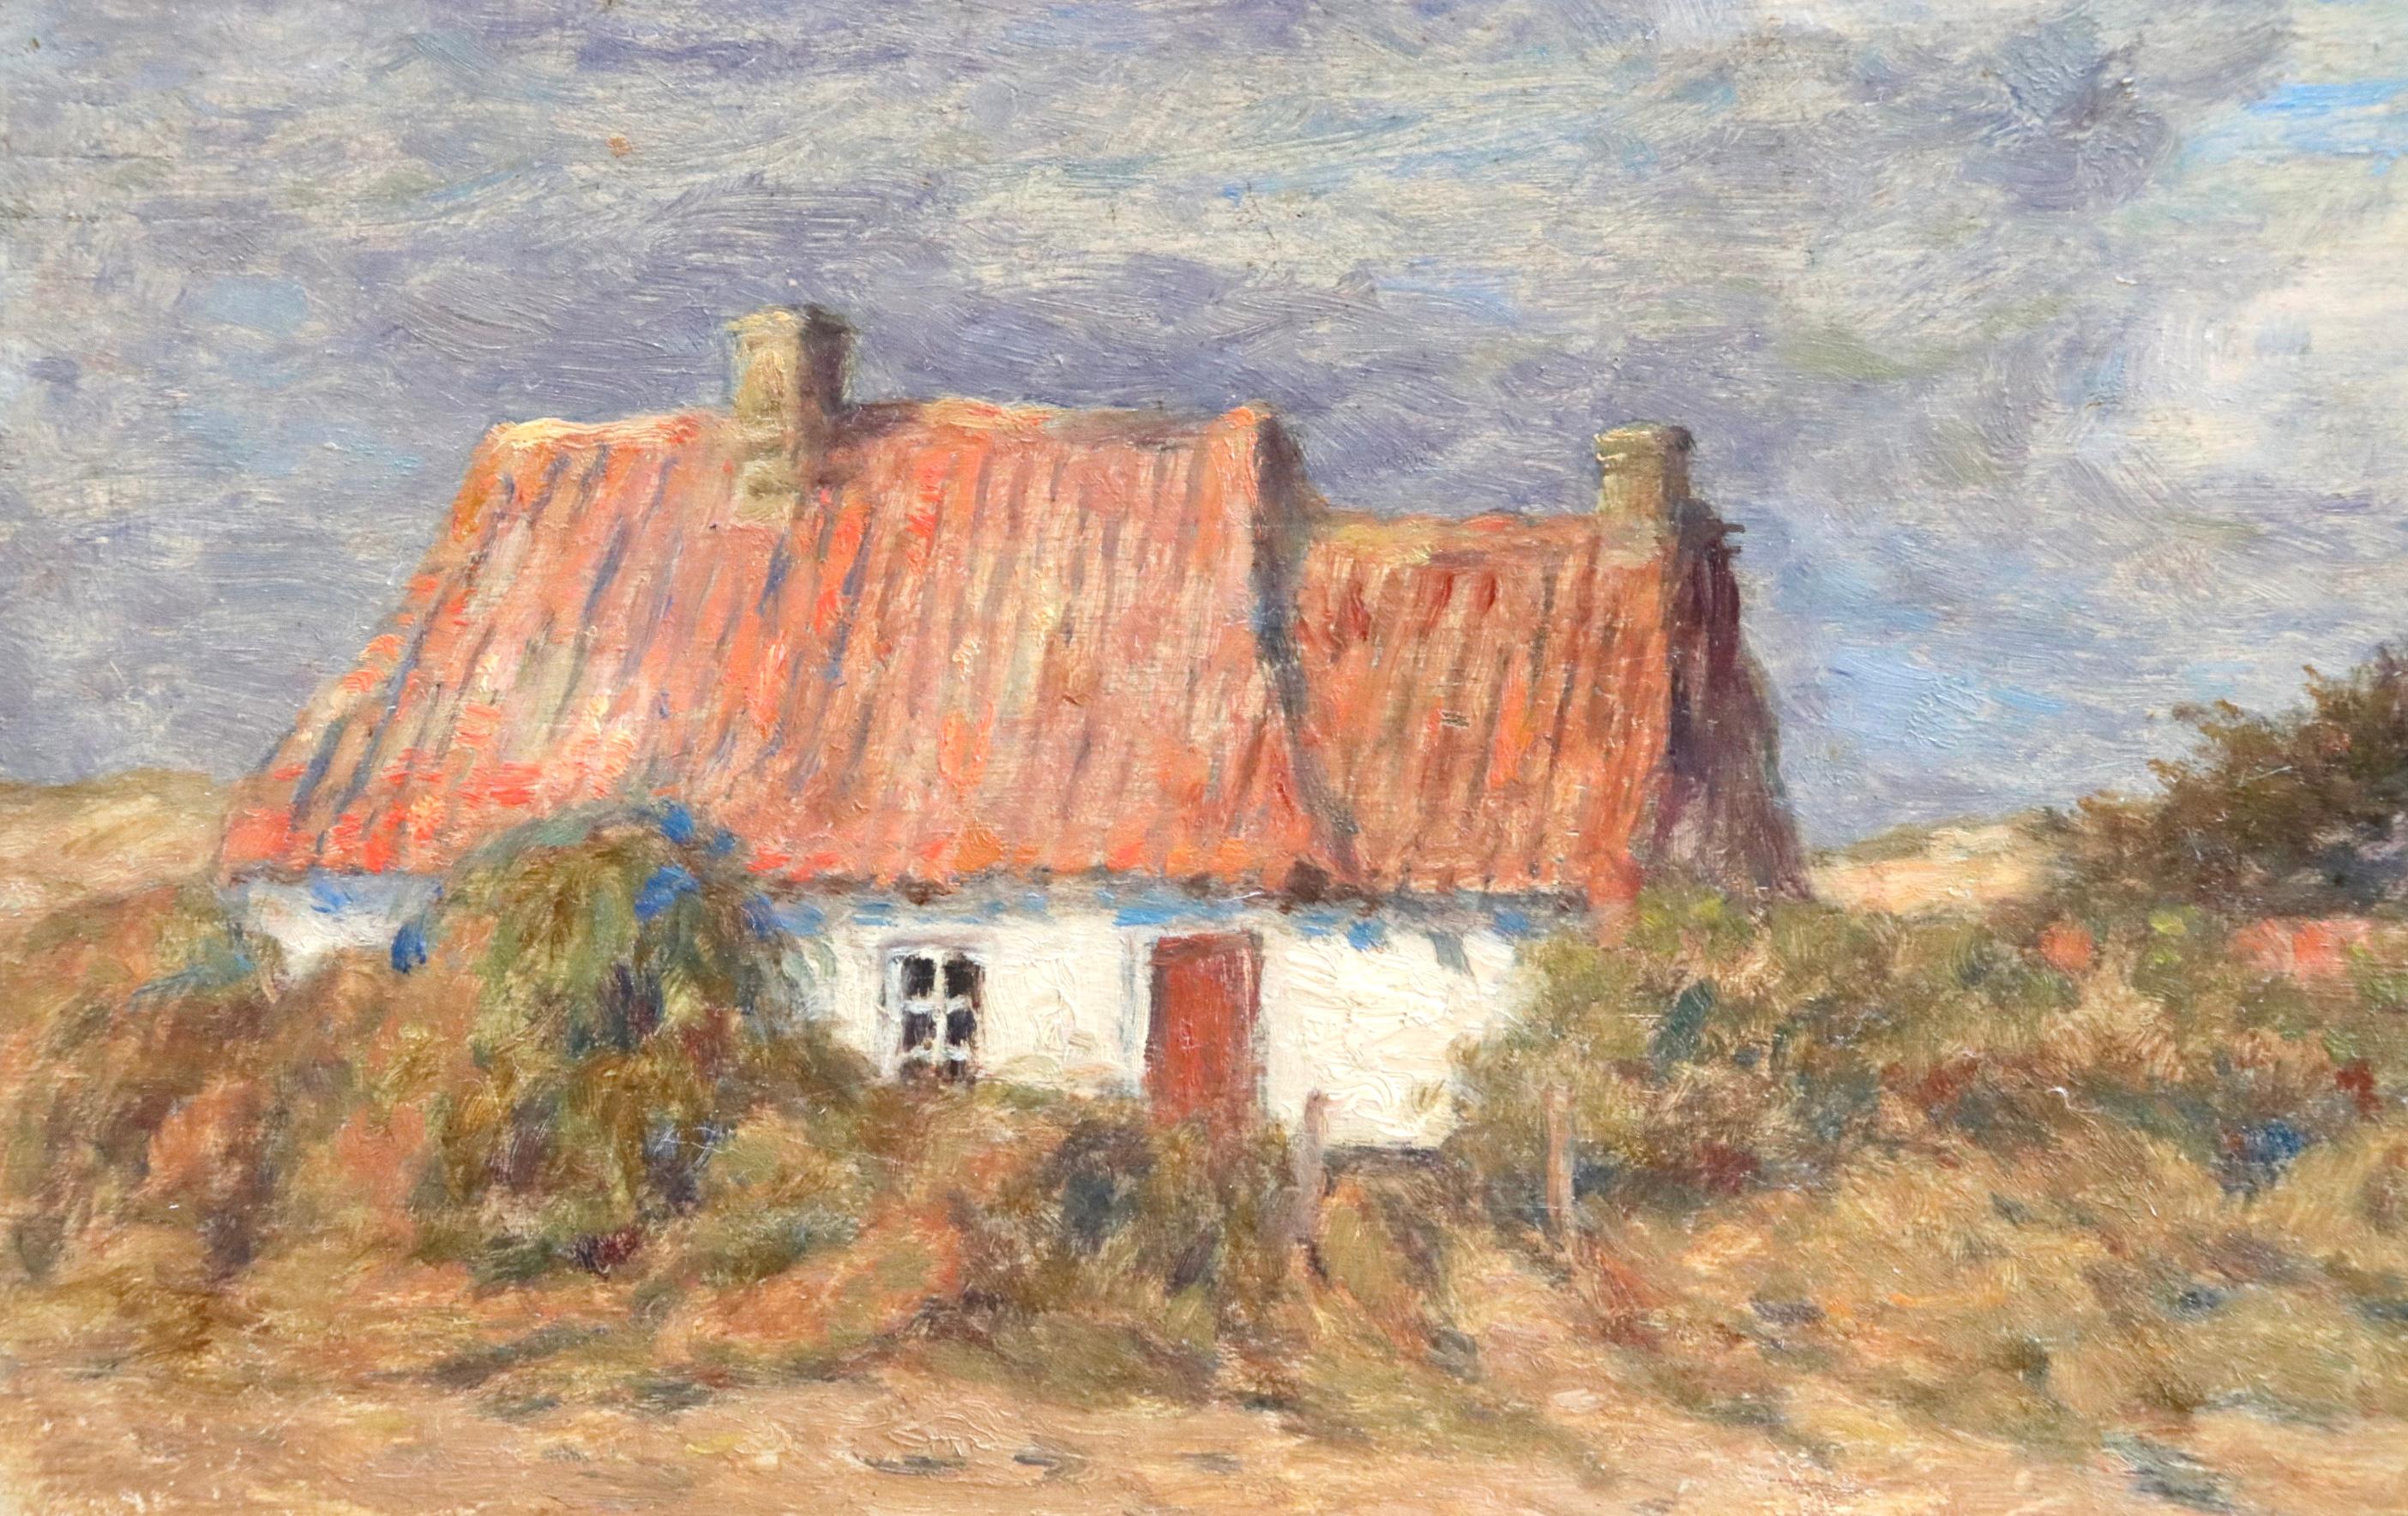 Chalet dans Paysage - Impressionist Oil, Cottage in Landscape by Marie Duhem 1